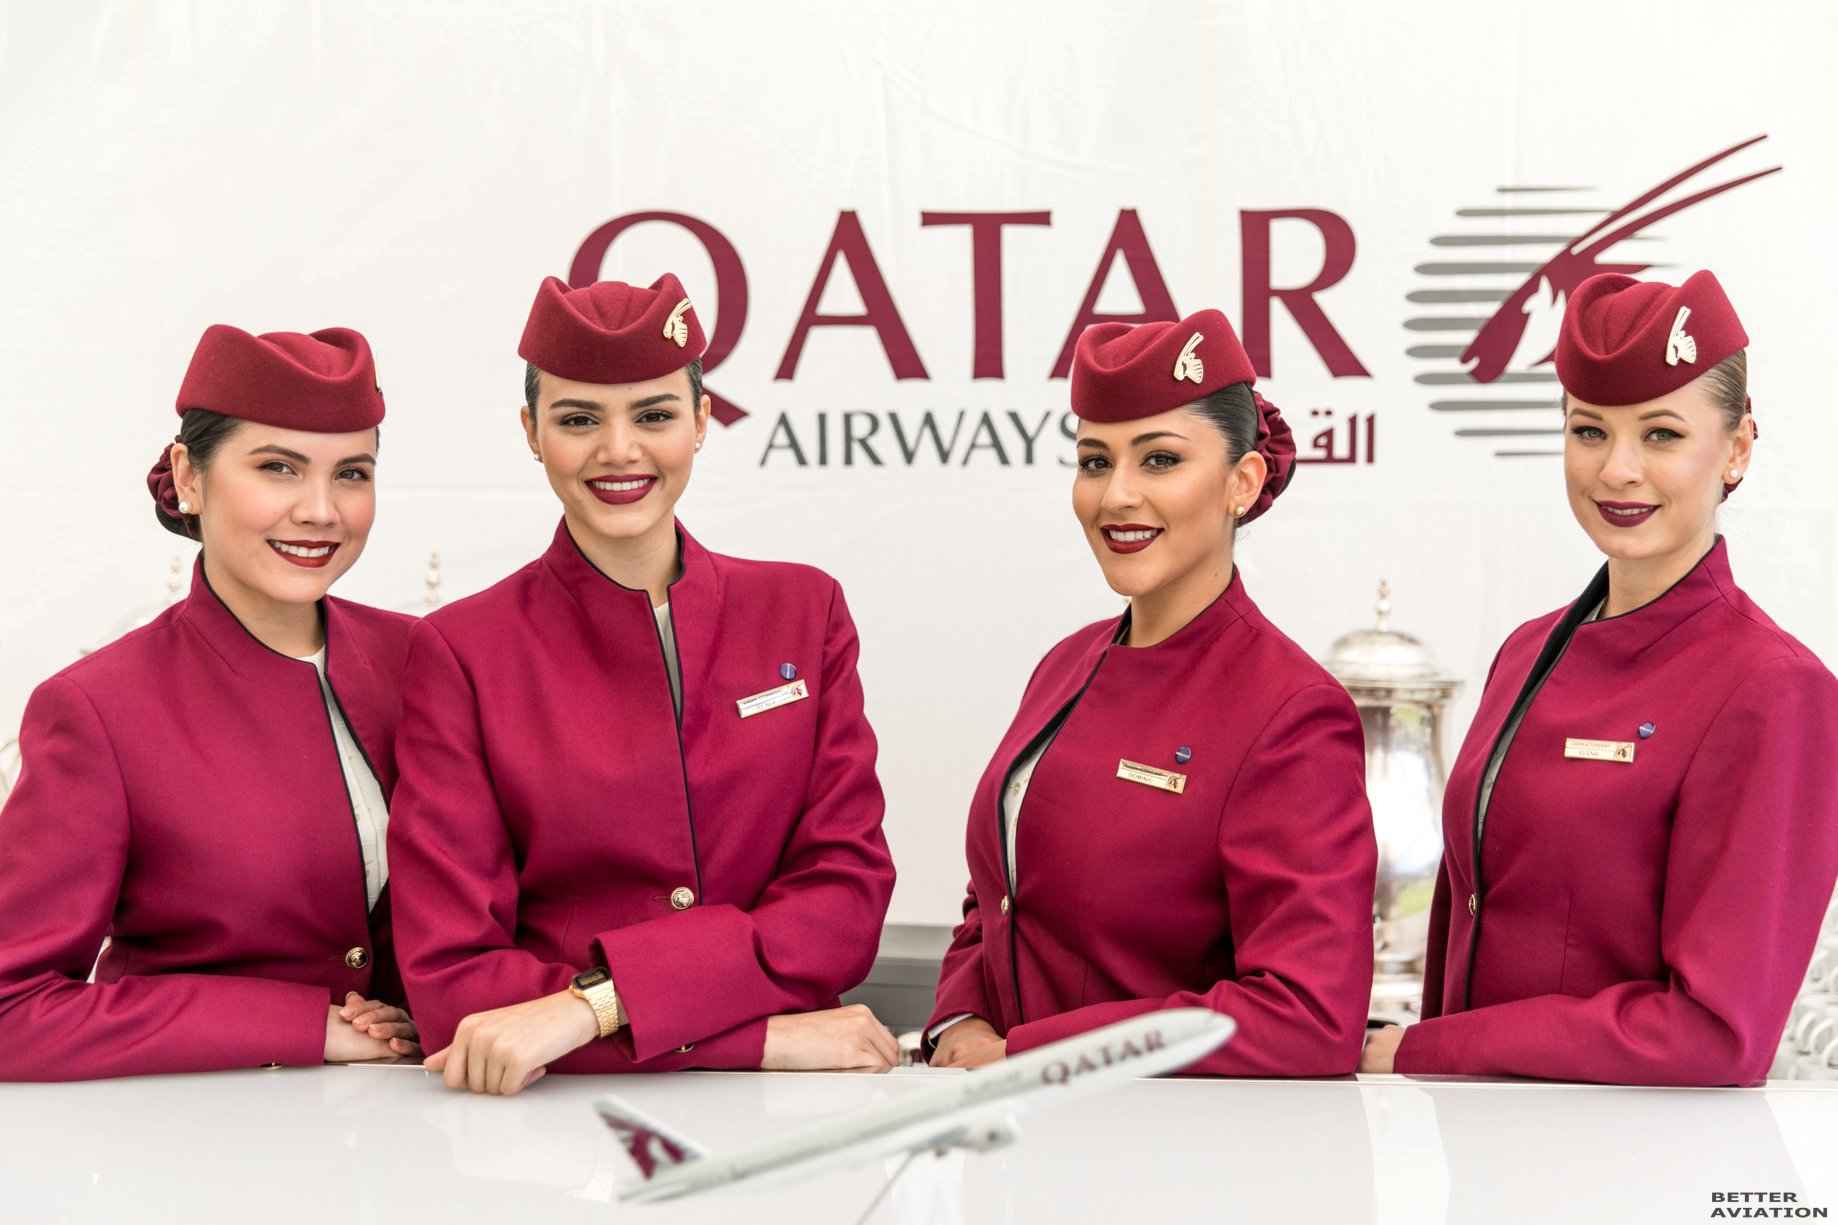 qatar travel requirements qatar airways